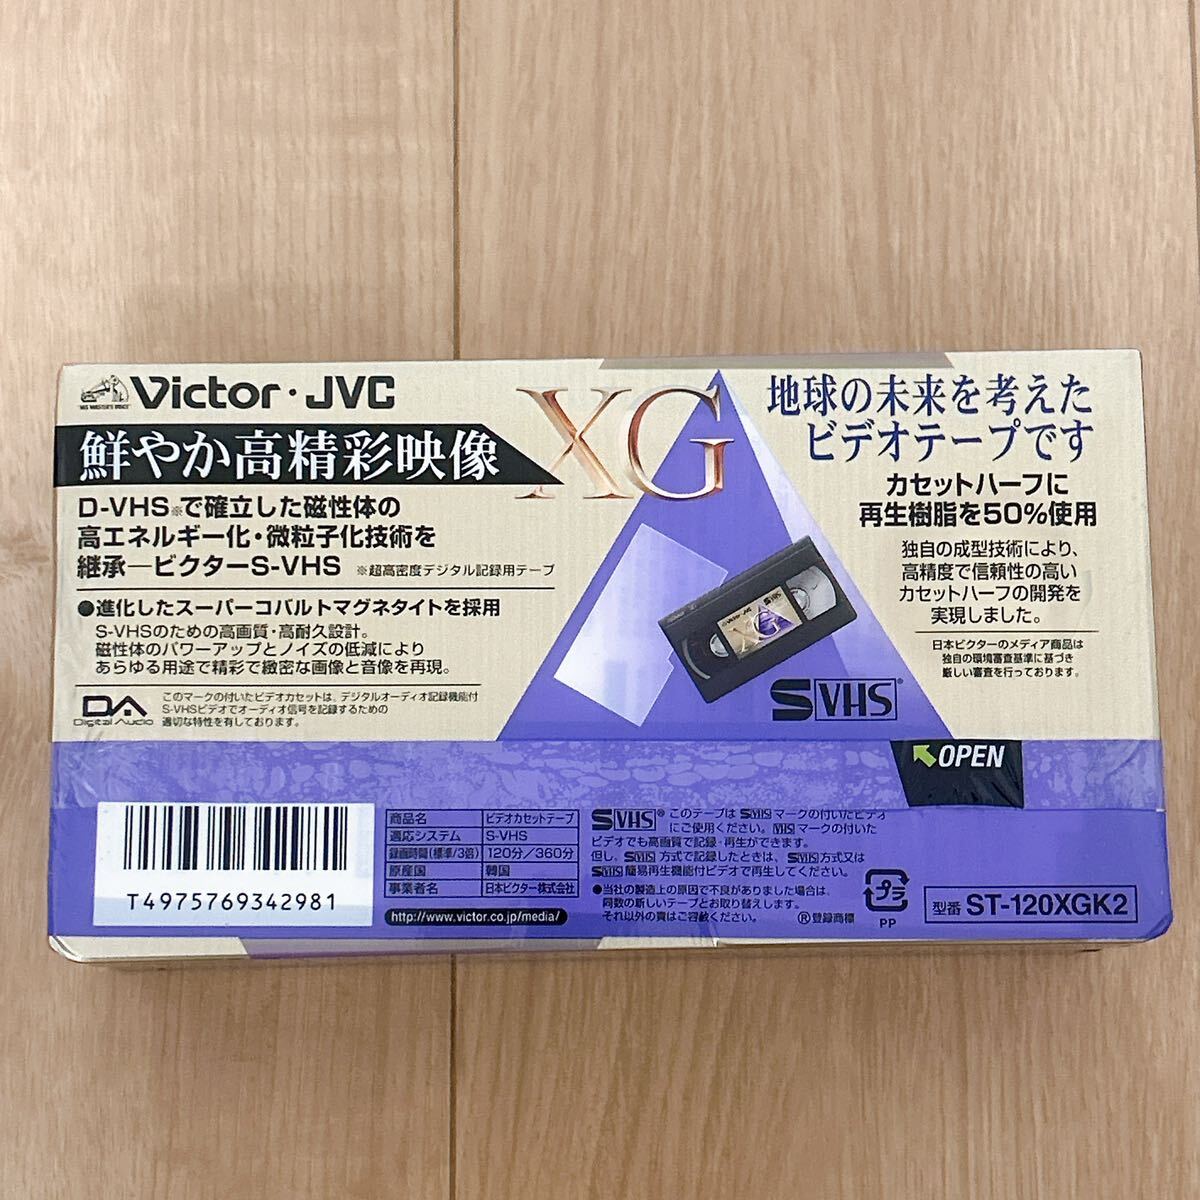 【新品未使用】SVHS ビデオテープ 120分 合計18本 Victor ビクター JVC S-VHS 2本×9セット デジタル記録用テープ ビデオカセットテープの画像8